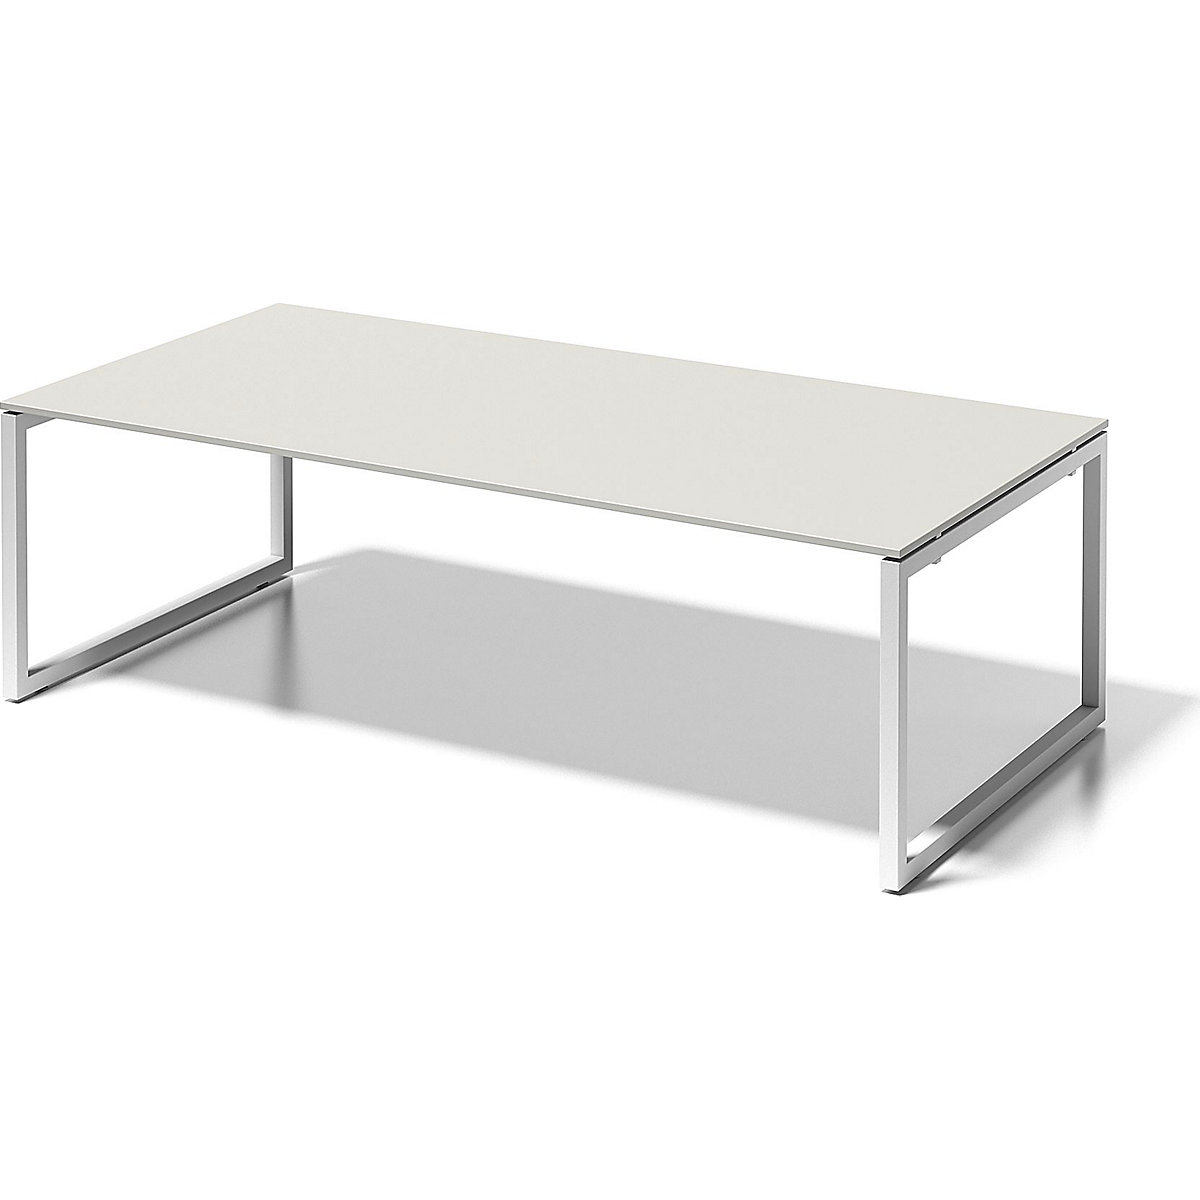 Pisaći stol CITO, postolje u obliku slova O – BISLEY, VxŠxD 740 x 2400 x 1200 mm, postolje u bijeloj boji, ploča u sivobijeloj boji-5